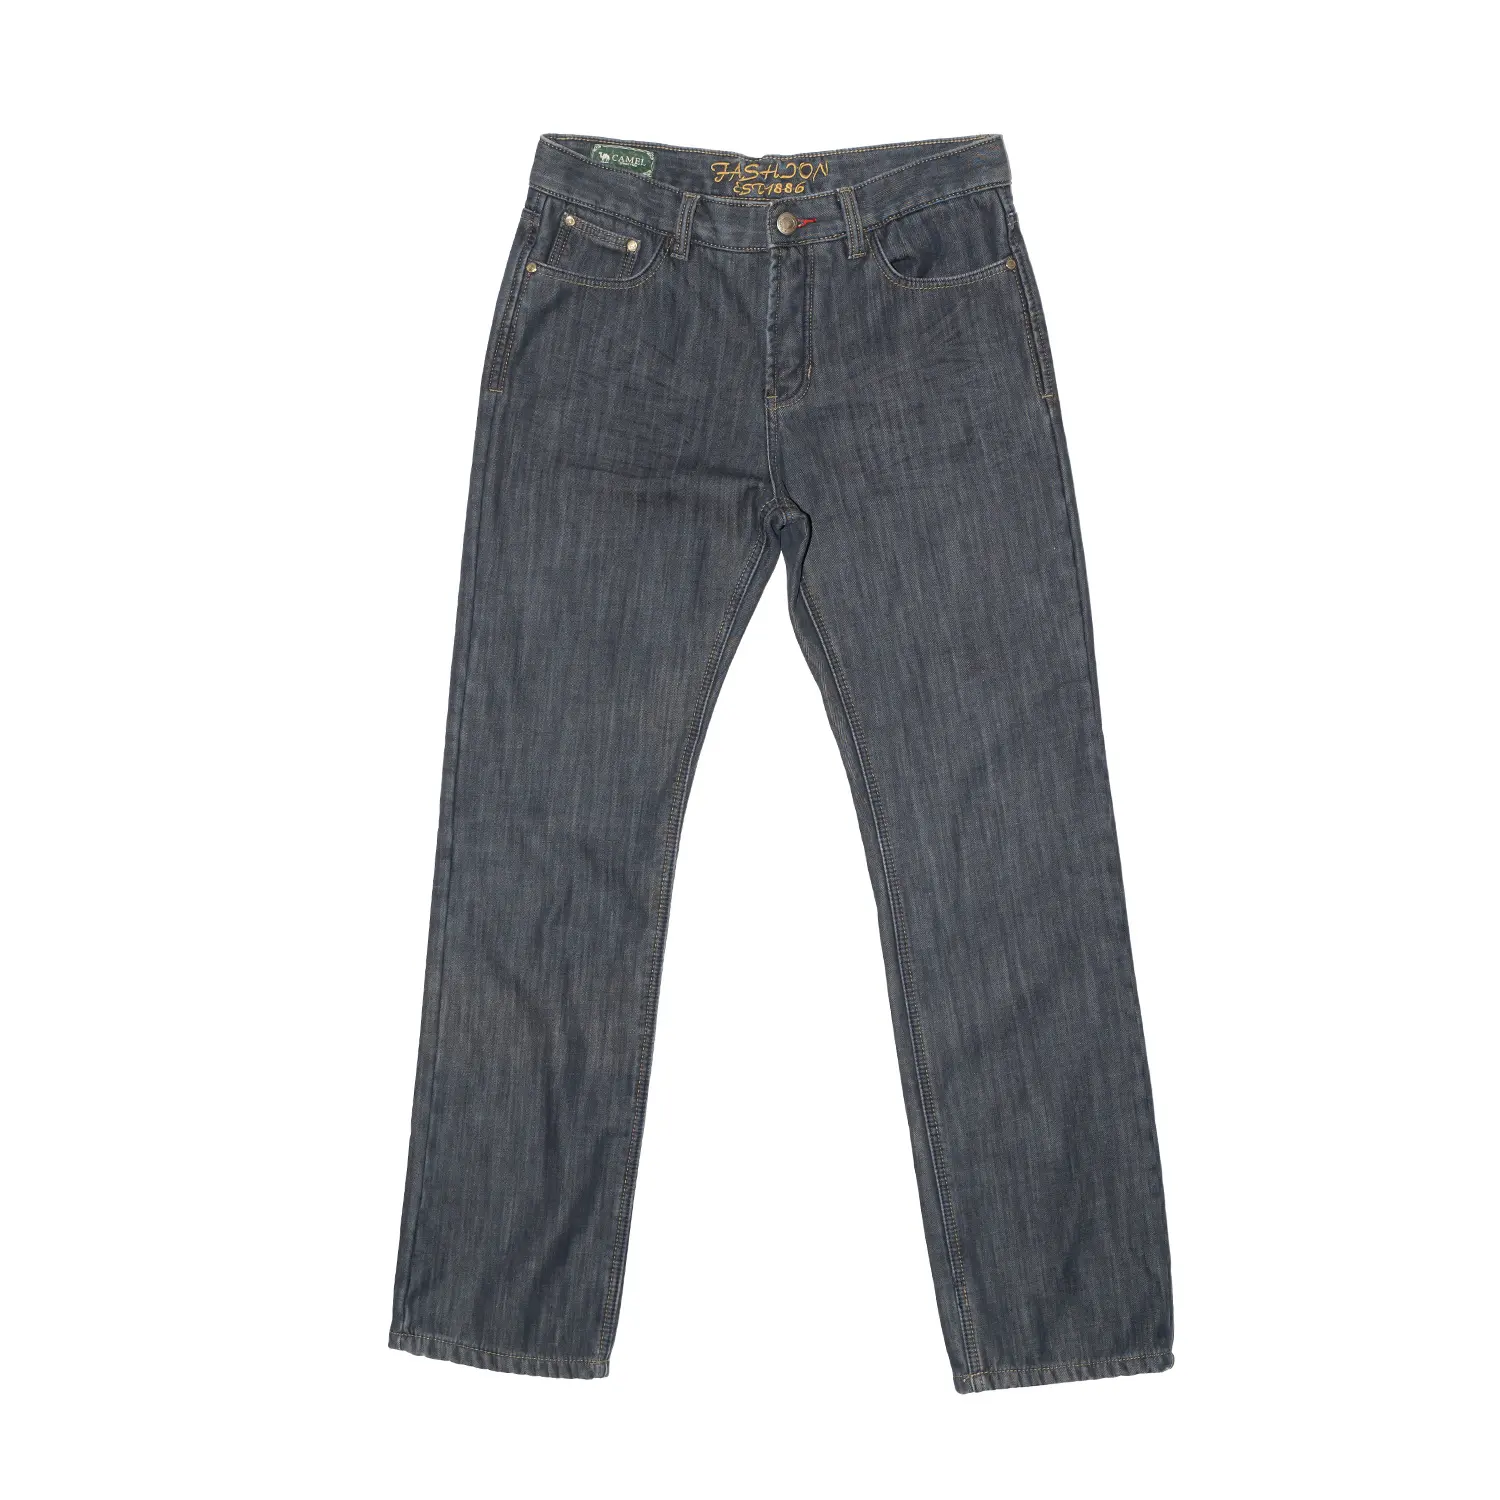 Tweedehands Gebruikt Mannen Jeans Broek Groothandel T-shirt Balen New York Azië Japan India Bsg Gebruikt Kleding